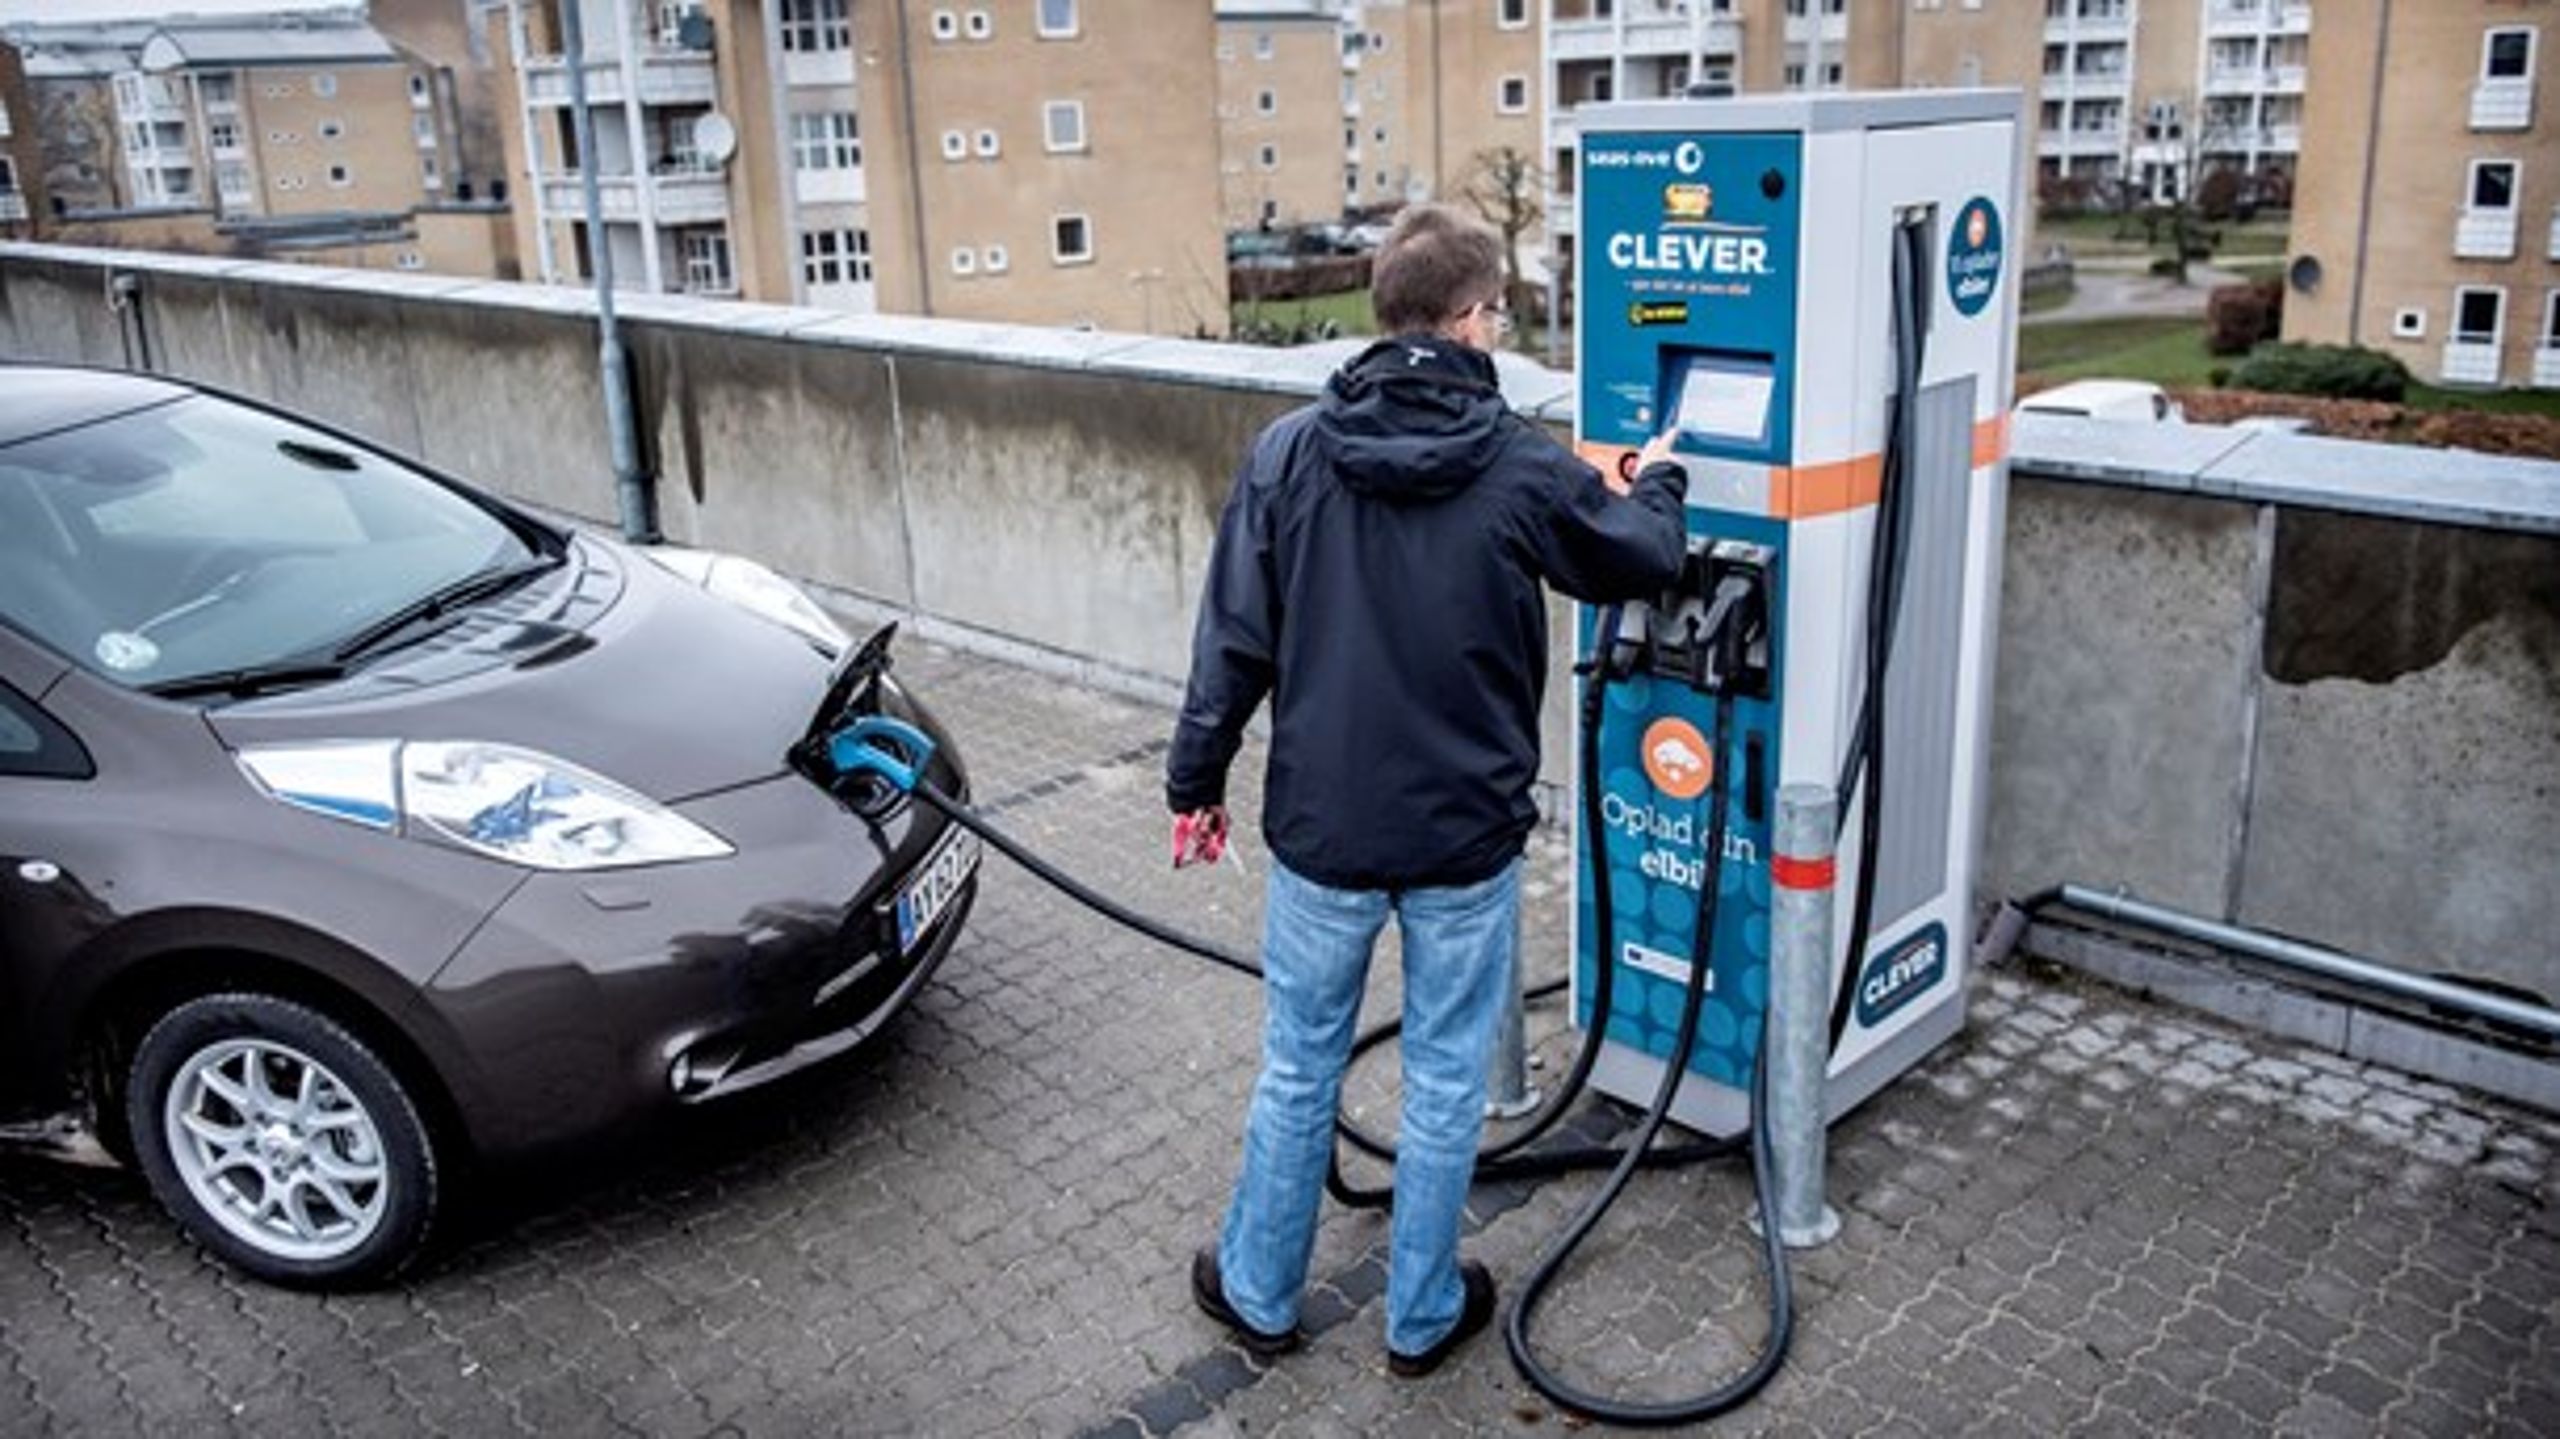 En
reduceret beskatning af elbiler vil være den dyreste måde at få færrest mulige kilometre
flyttet fra benzin/diesel til el, skriver Niels Agerholm fra Aalborg
Universitet.